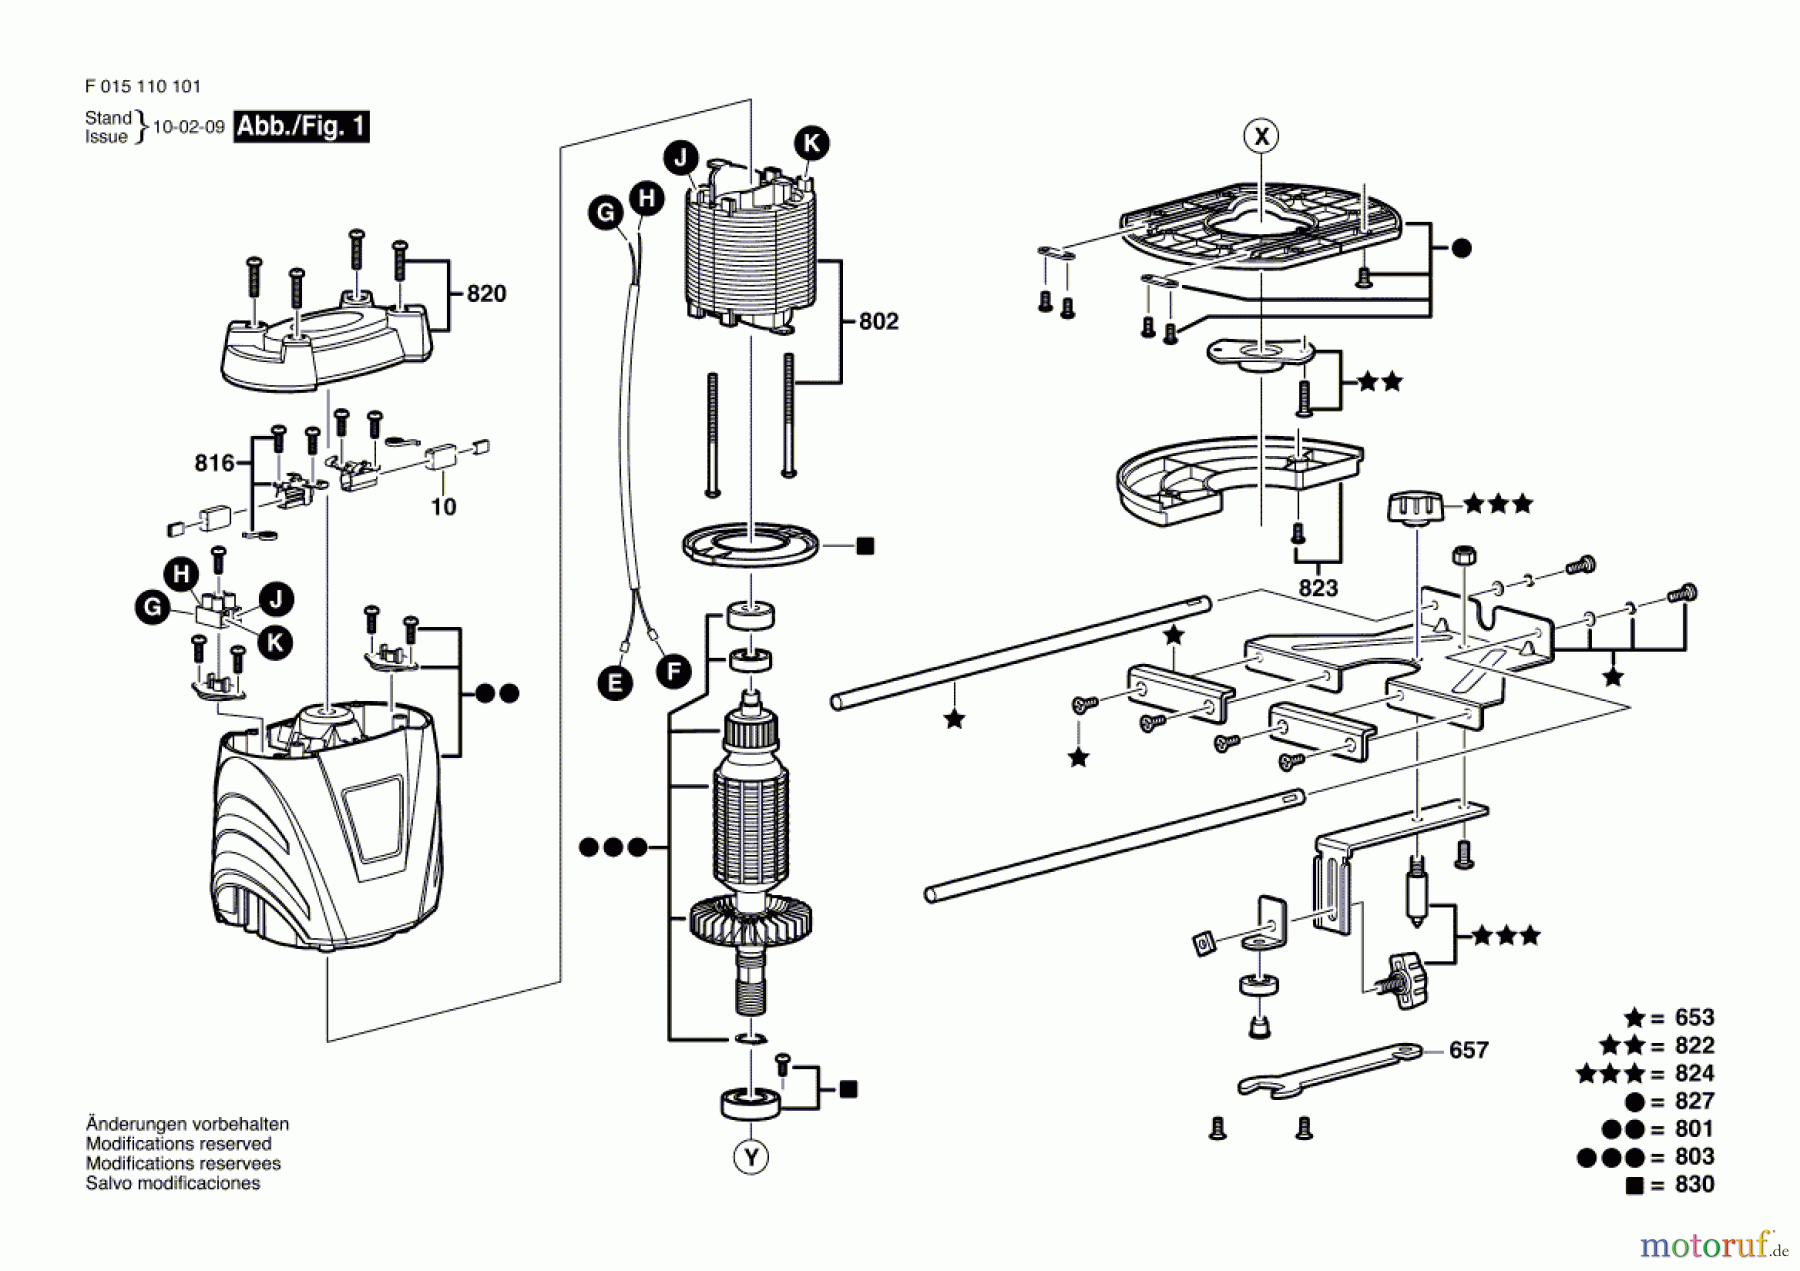  Bosch Werkzeug Oberfräse 1101 Seite 1